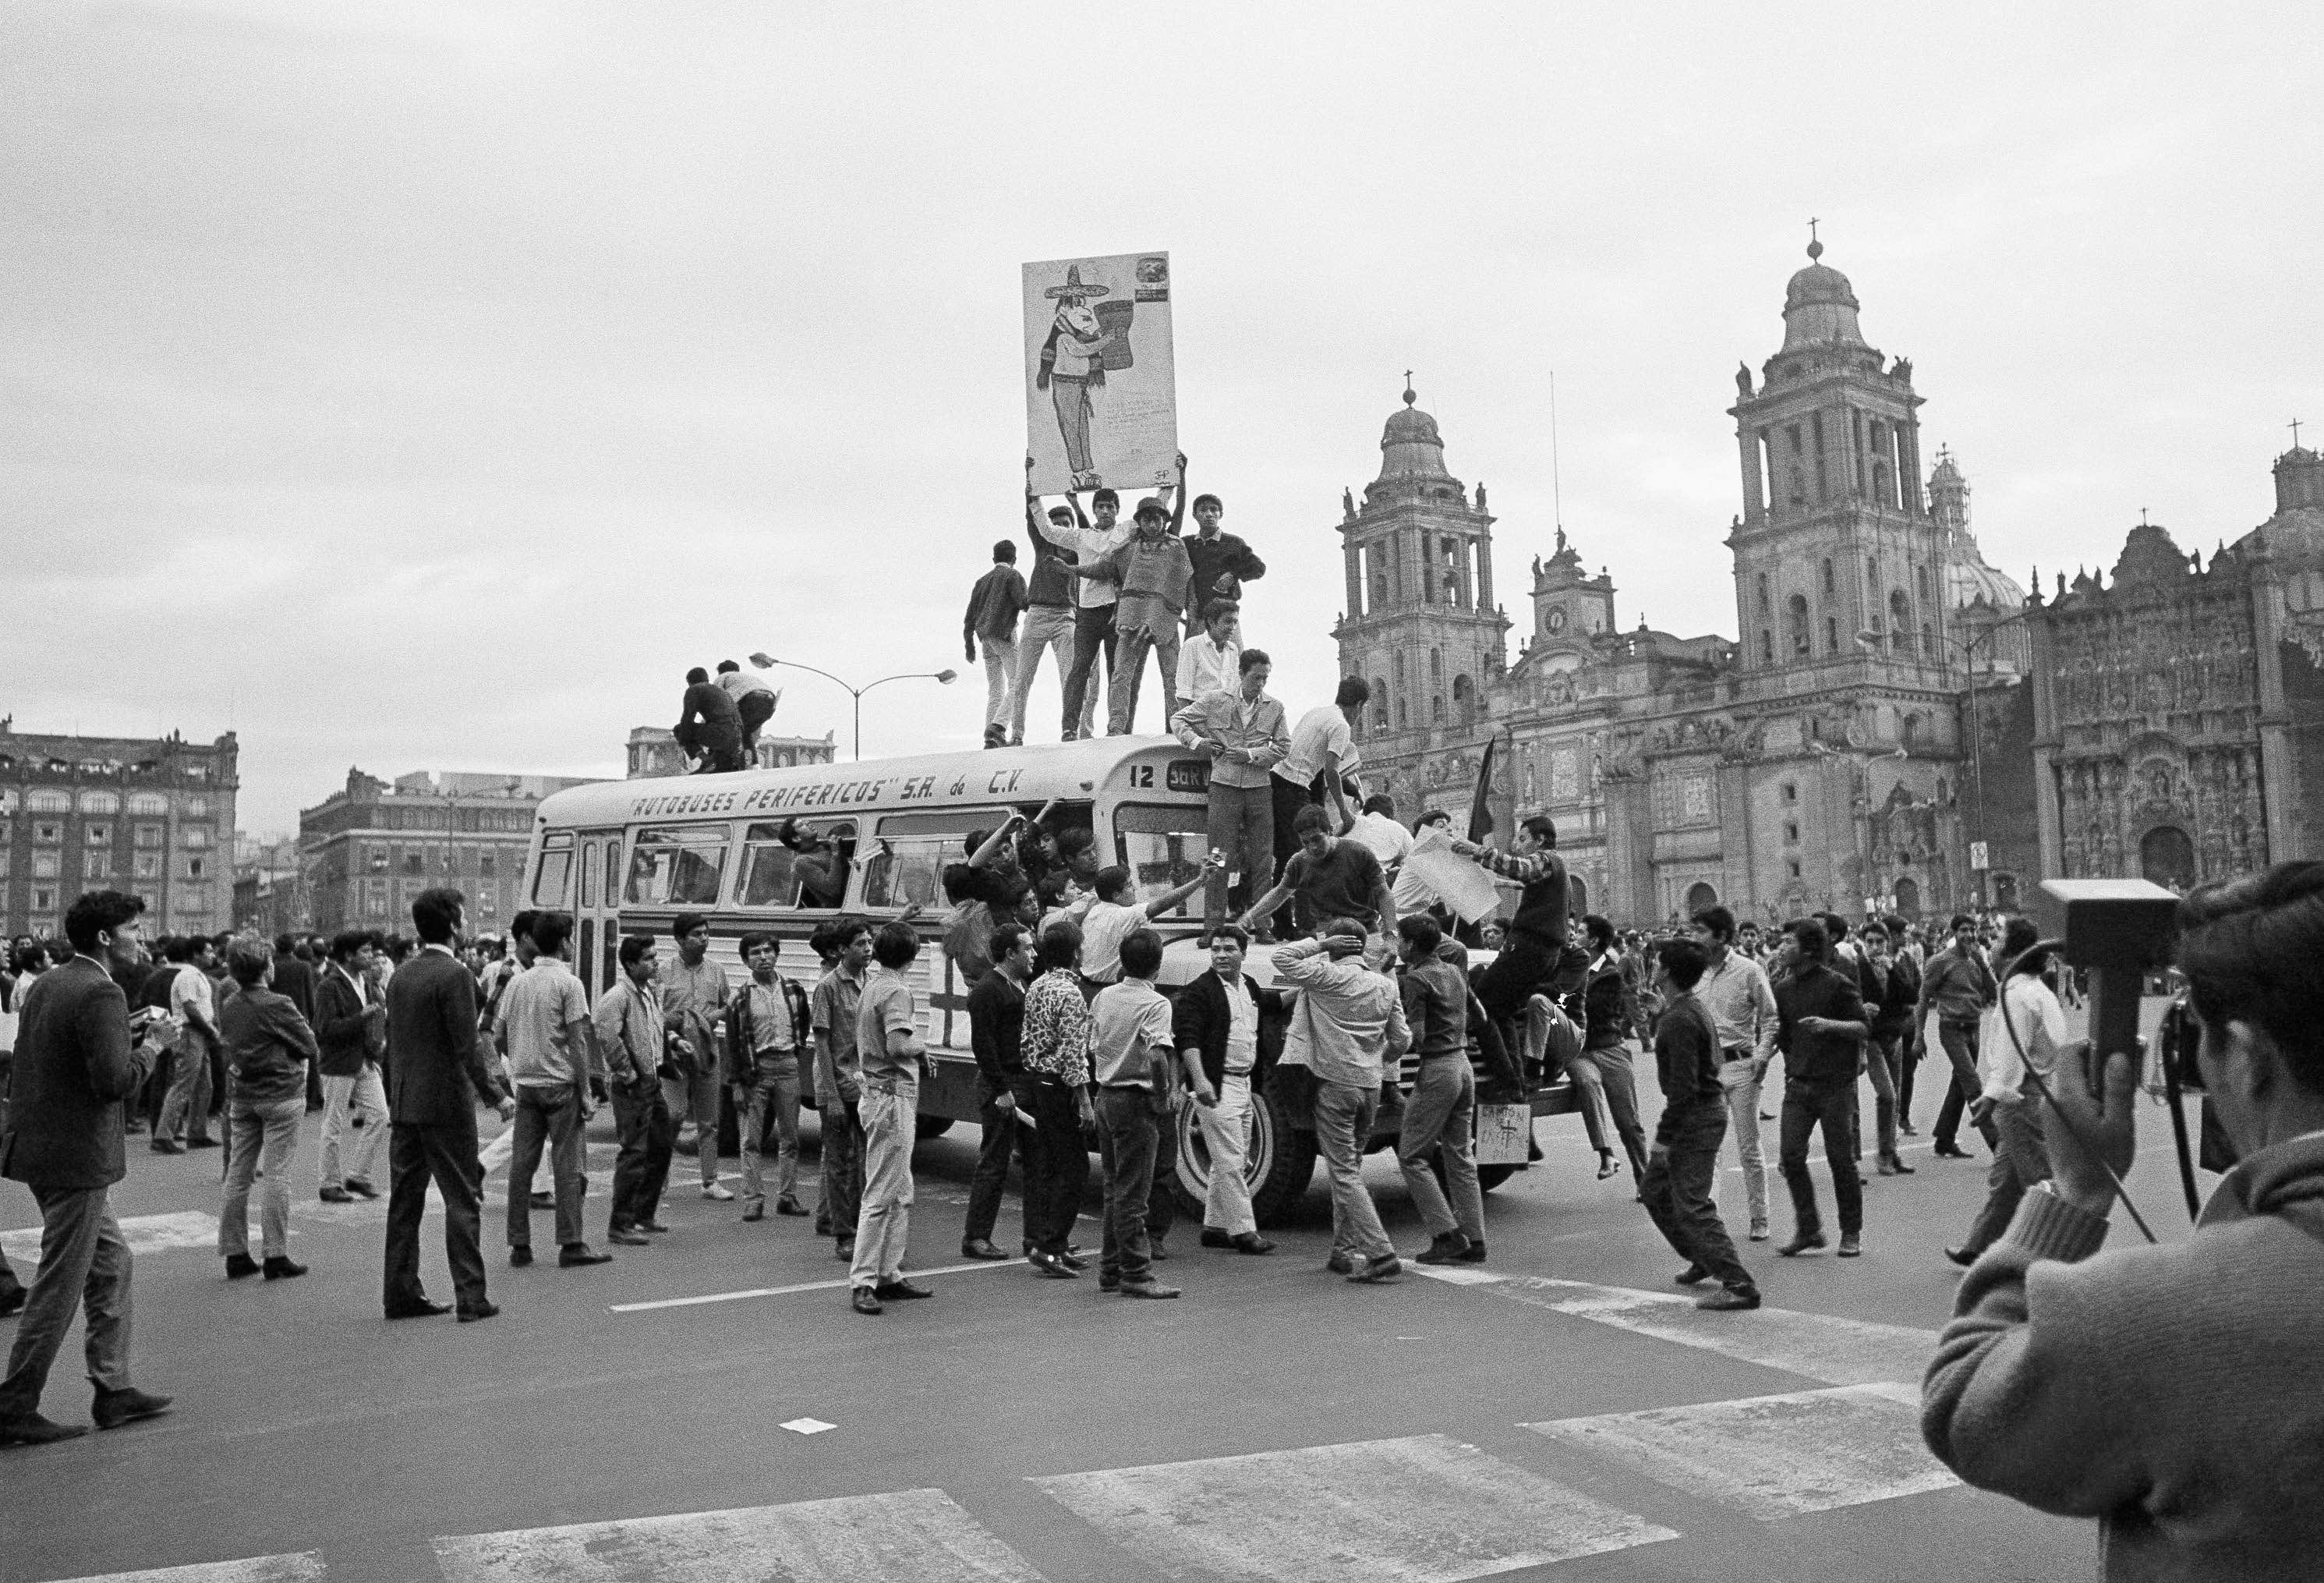 jovenes-estudiantes-protestas-zocalo-1968-mexico-68